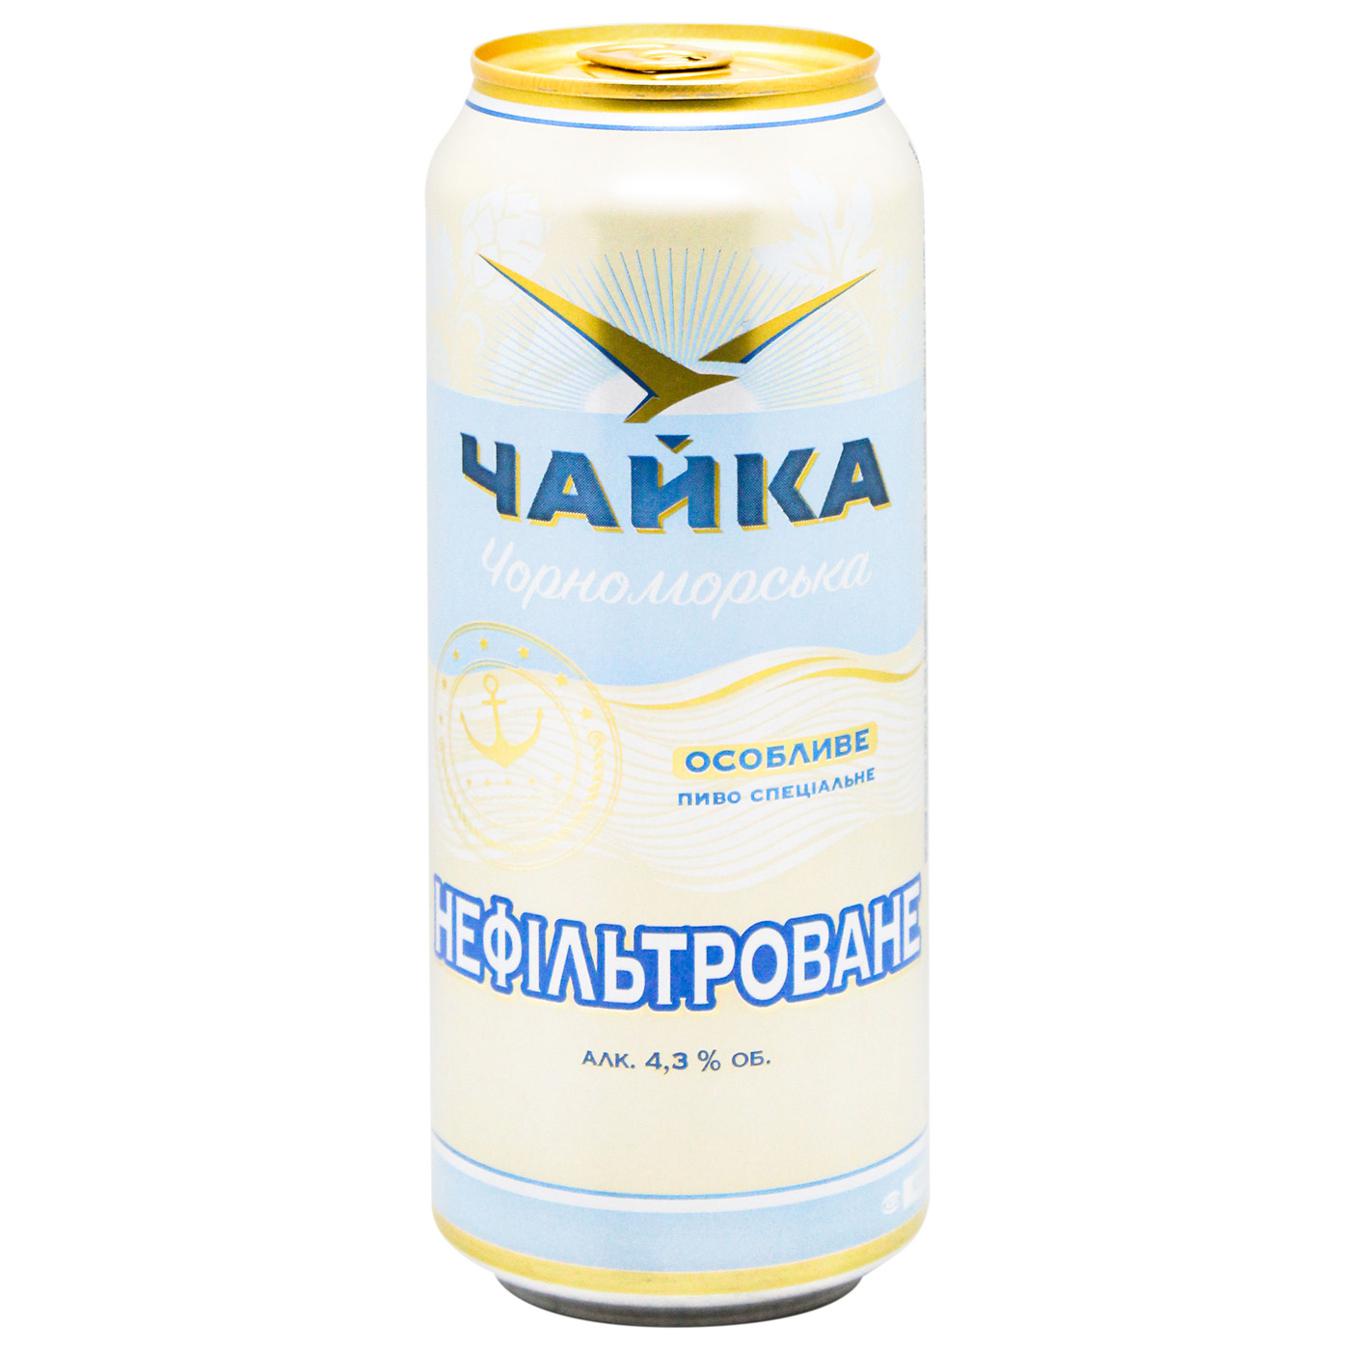 Пиво Чайка Черноморская светлое нефильтрованное 4,8% 0,5л железная банка